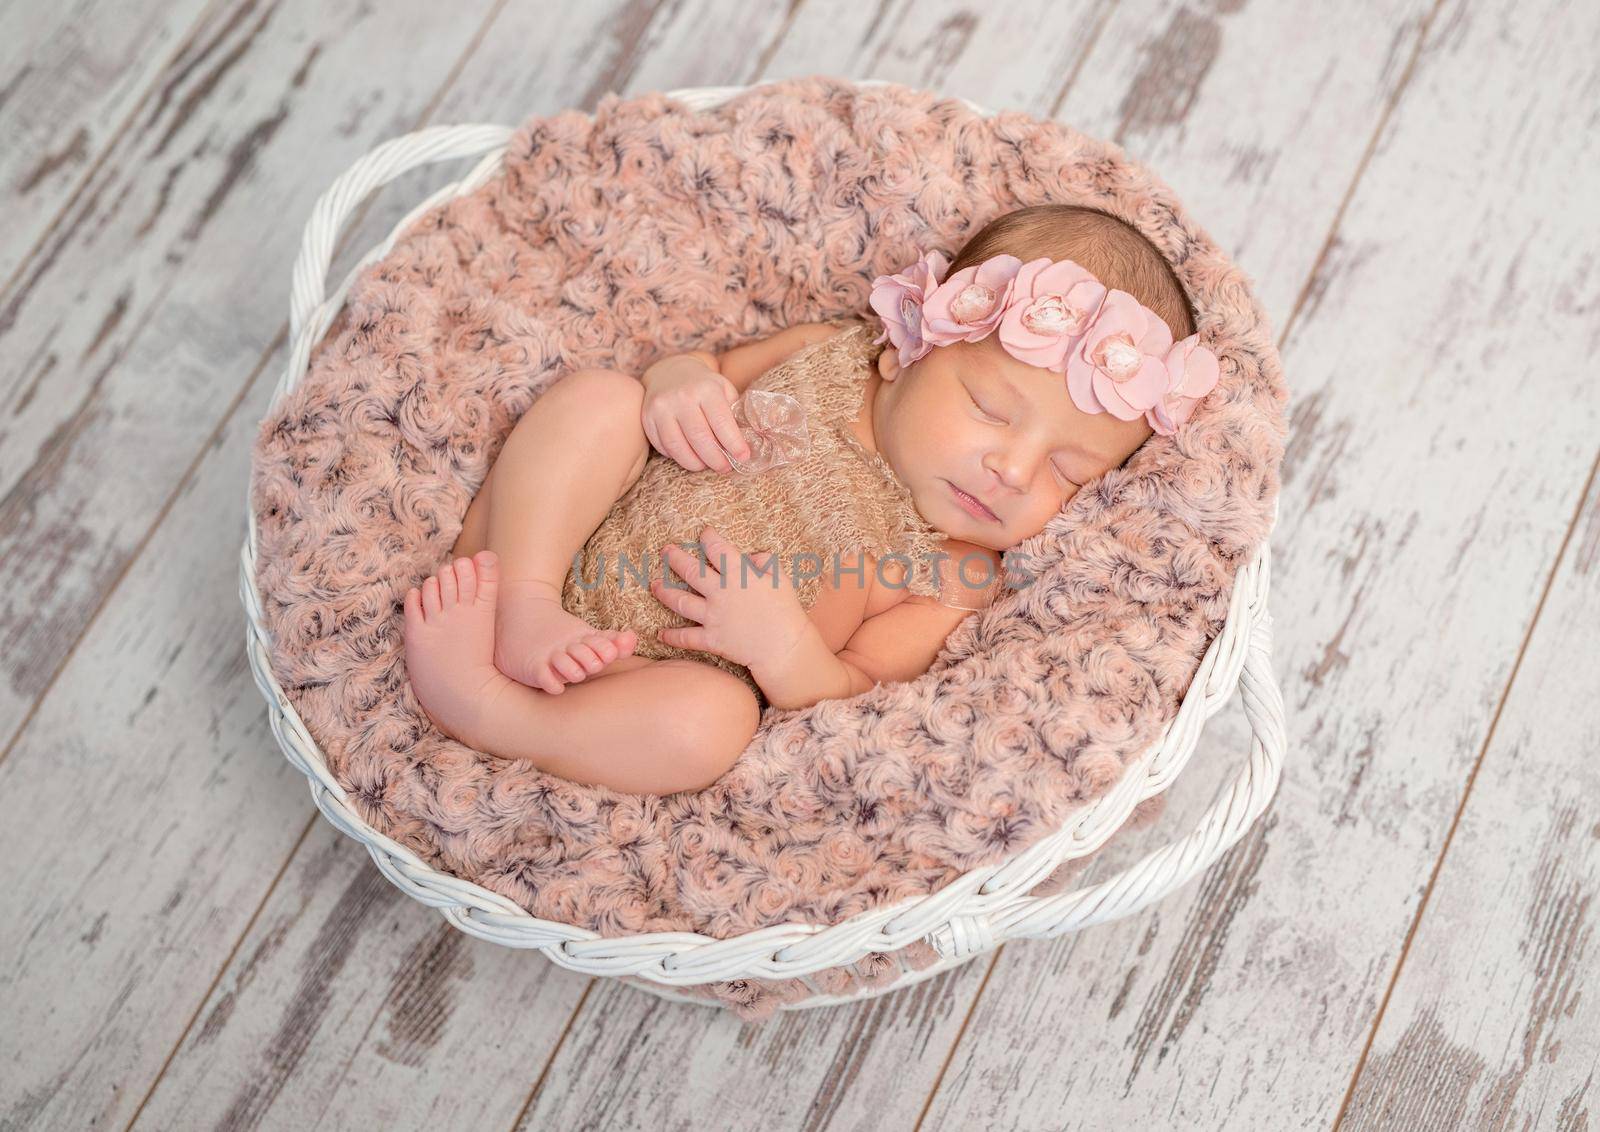 beautiful newborn in basket with fluffy blanket by tan4ikk1